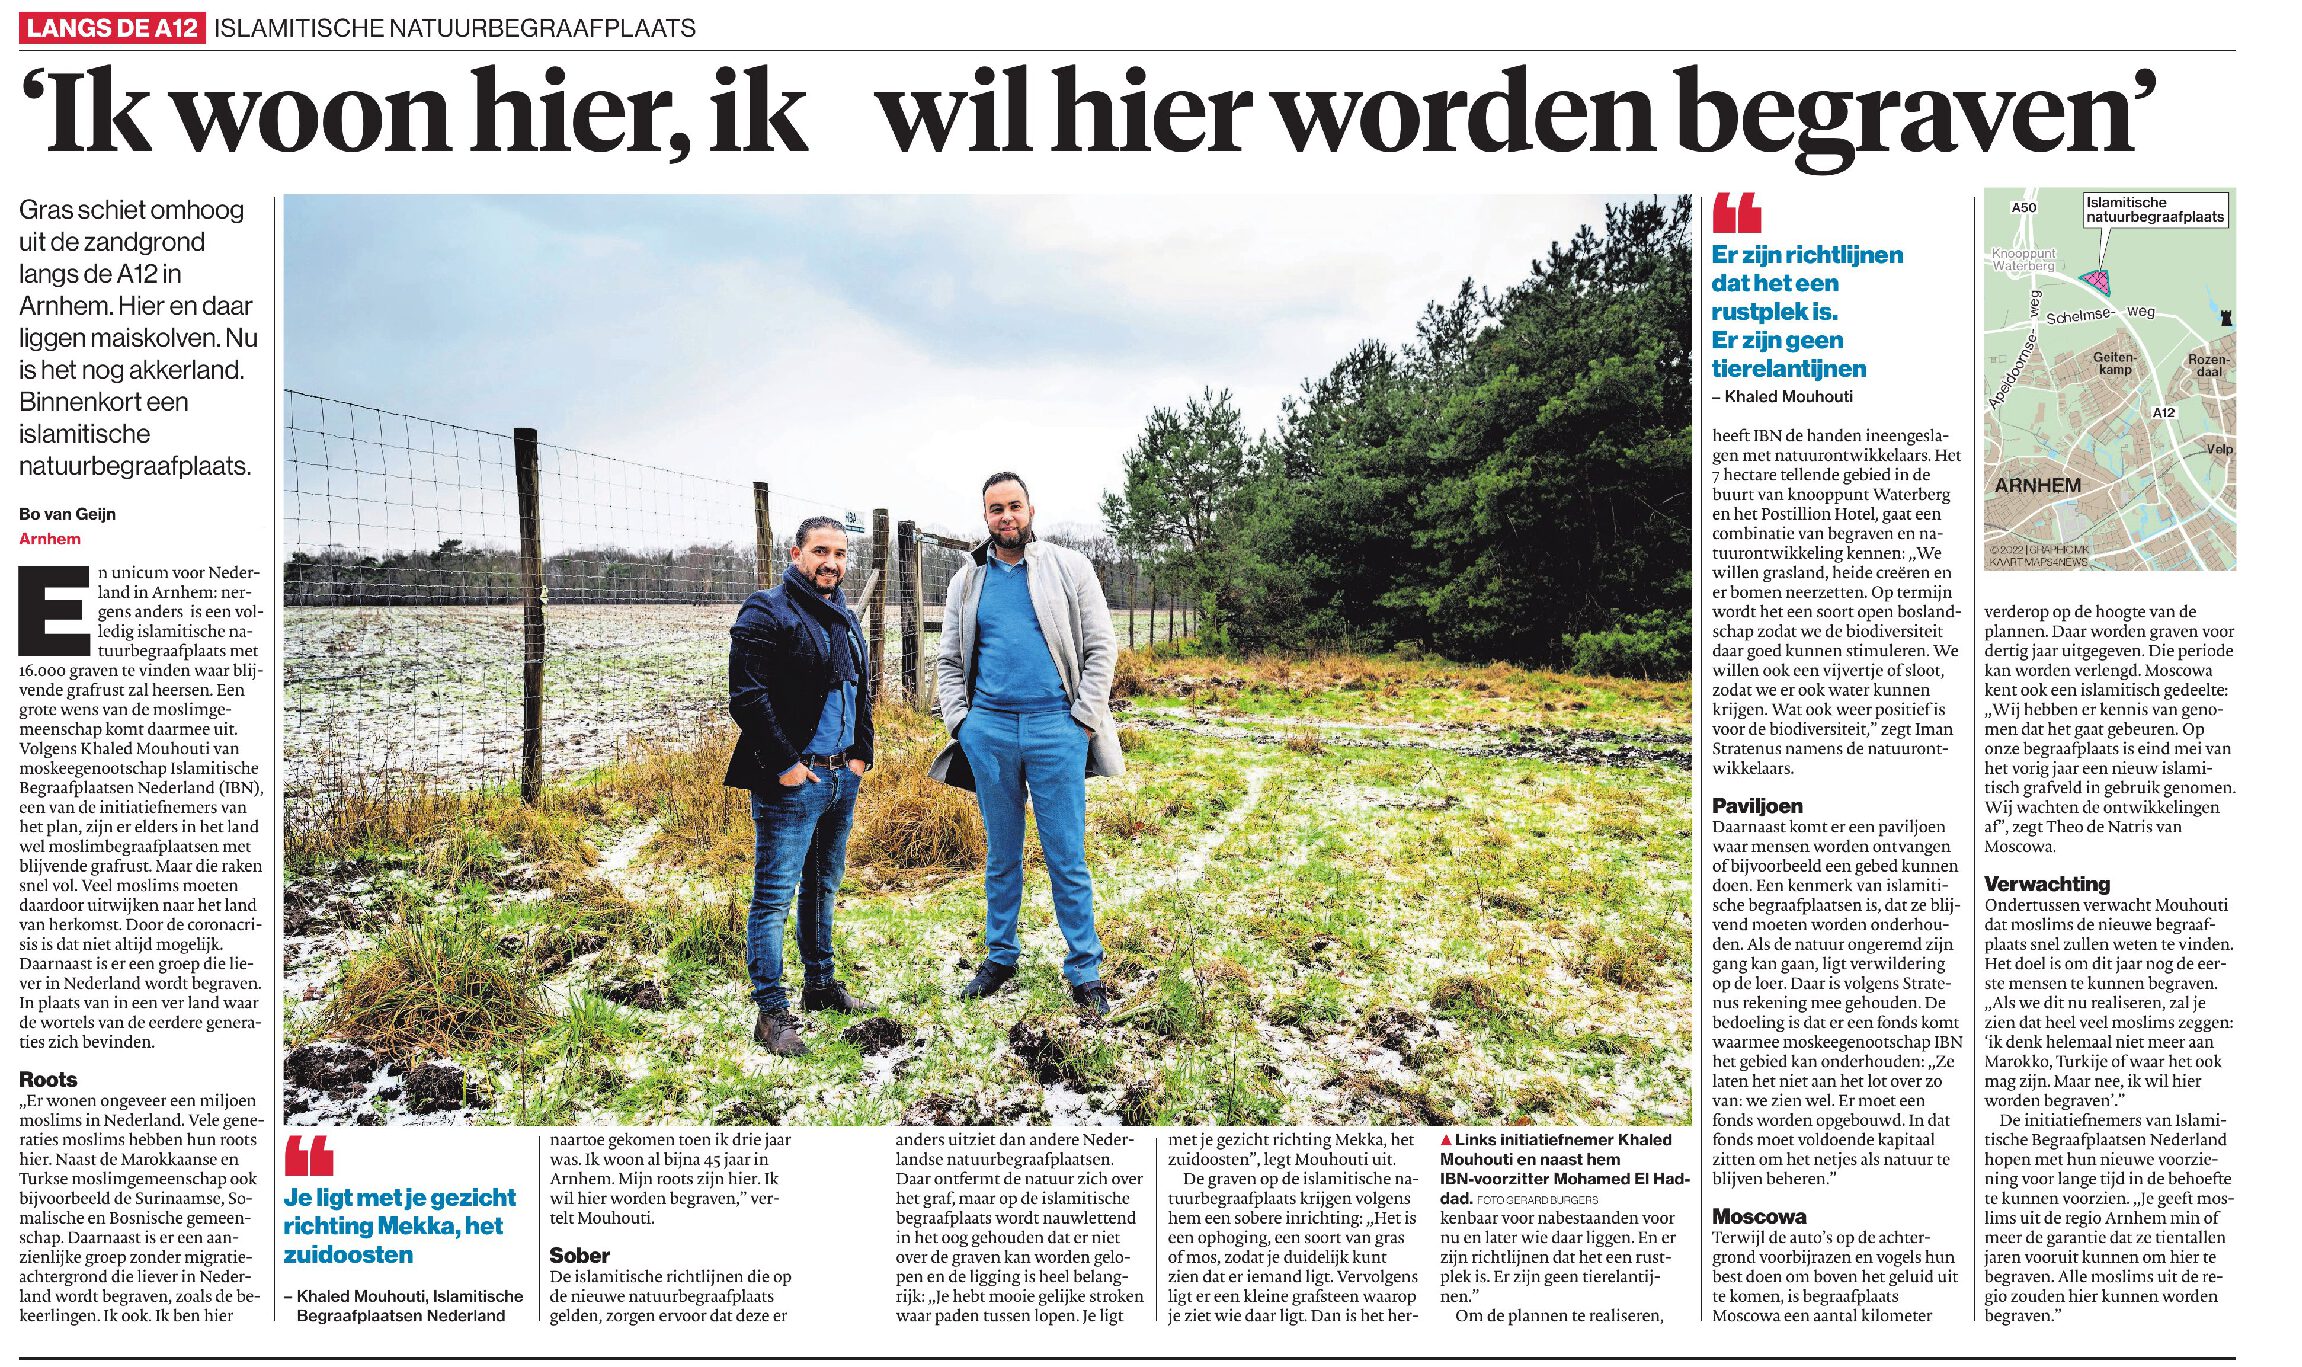 De Gelderlander: Islamitische natuurbegraafplaats met 16.000 plekken in Arnhem. ‘Ik woon hier al bijna 45 jaar, ik wil hier worden begraven’